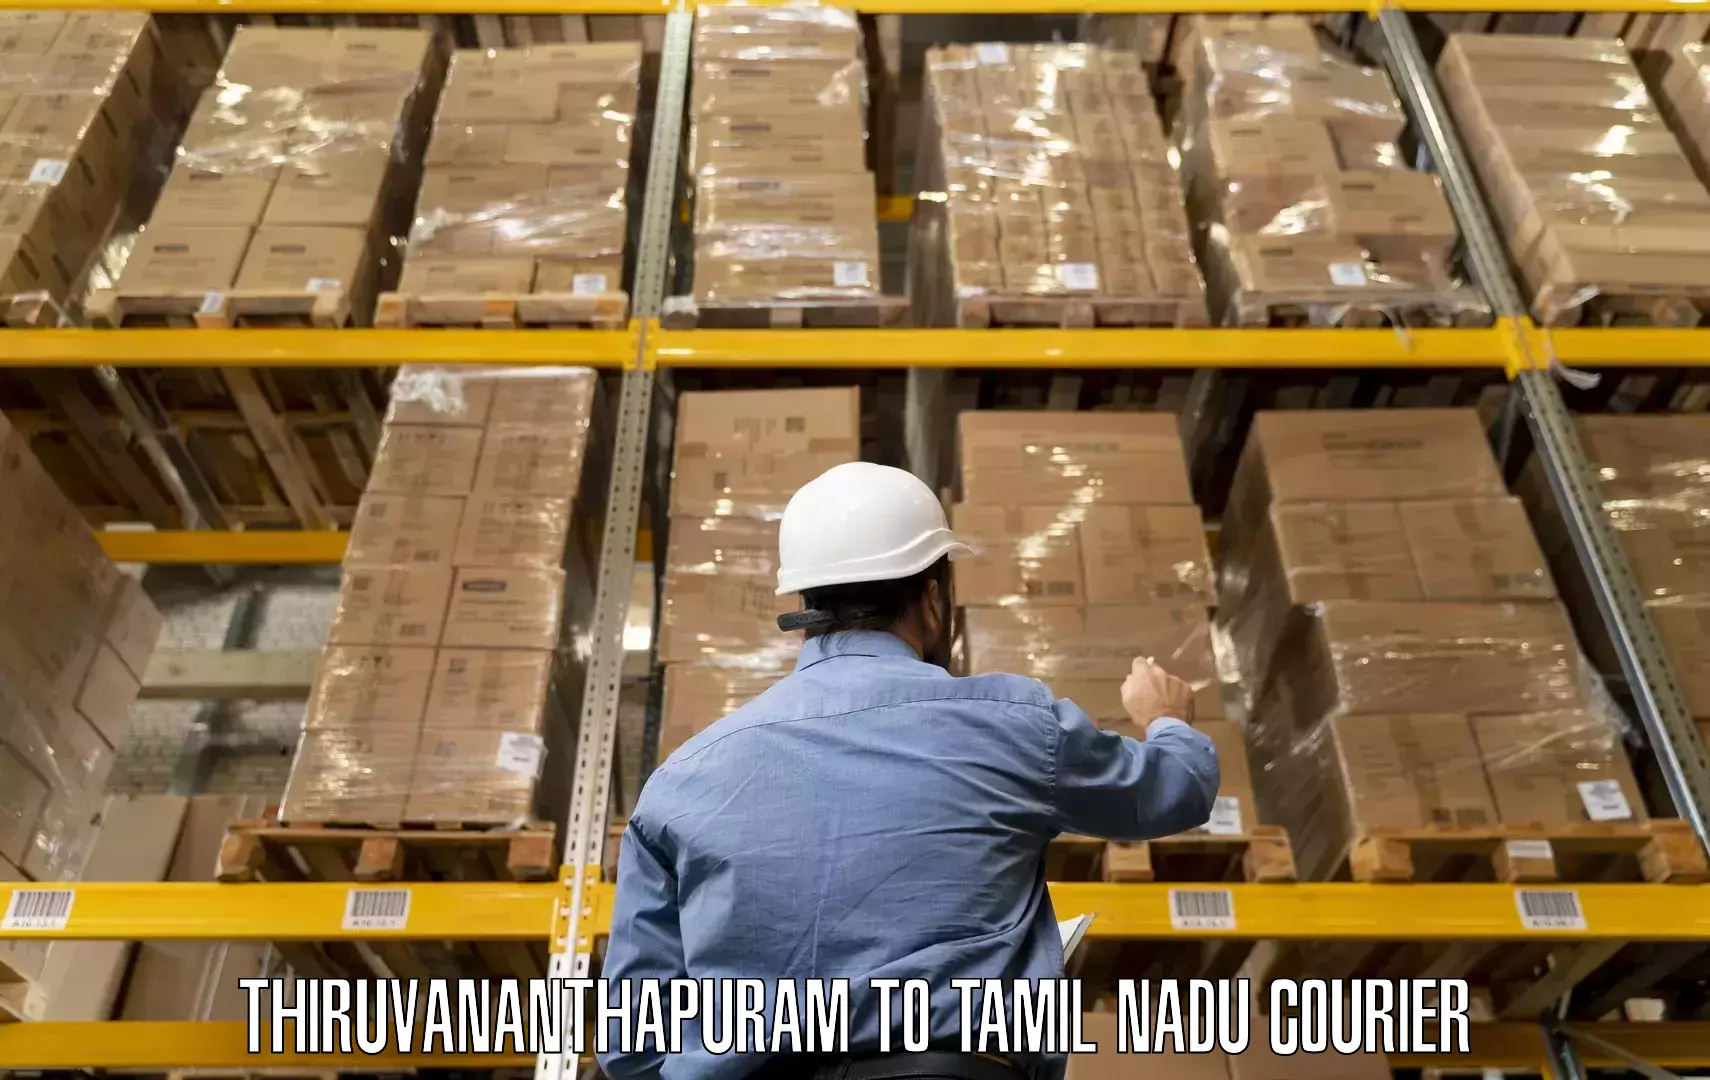 Trusted relocation experts Thiruvananthapuram to Viralimalai